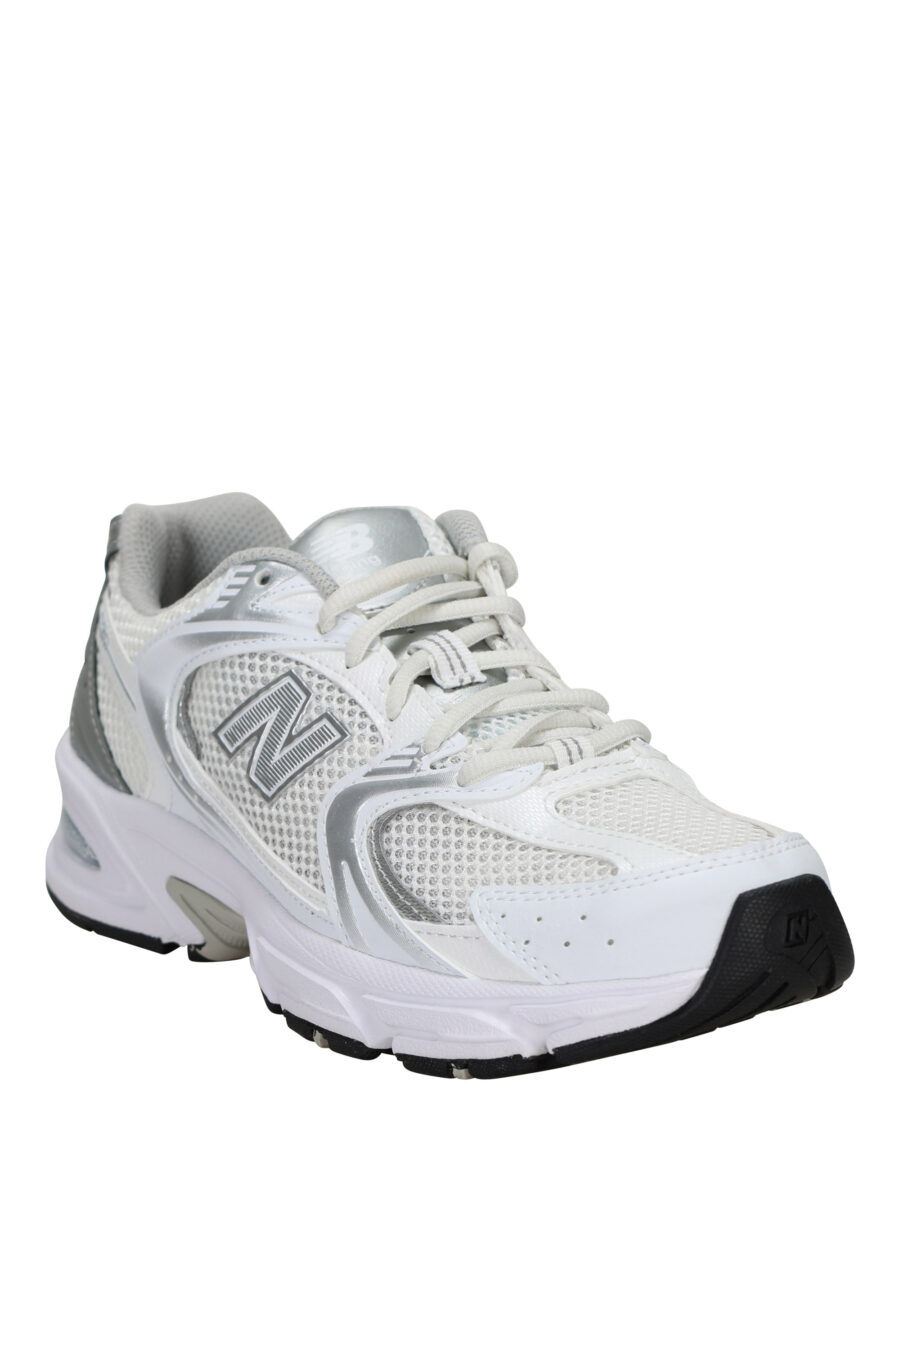 Zapatillas blancas con plateado "530" con logo "N" plateado - 739980463870 1